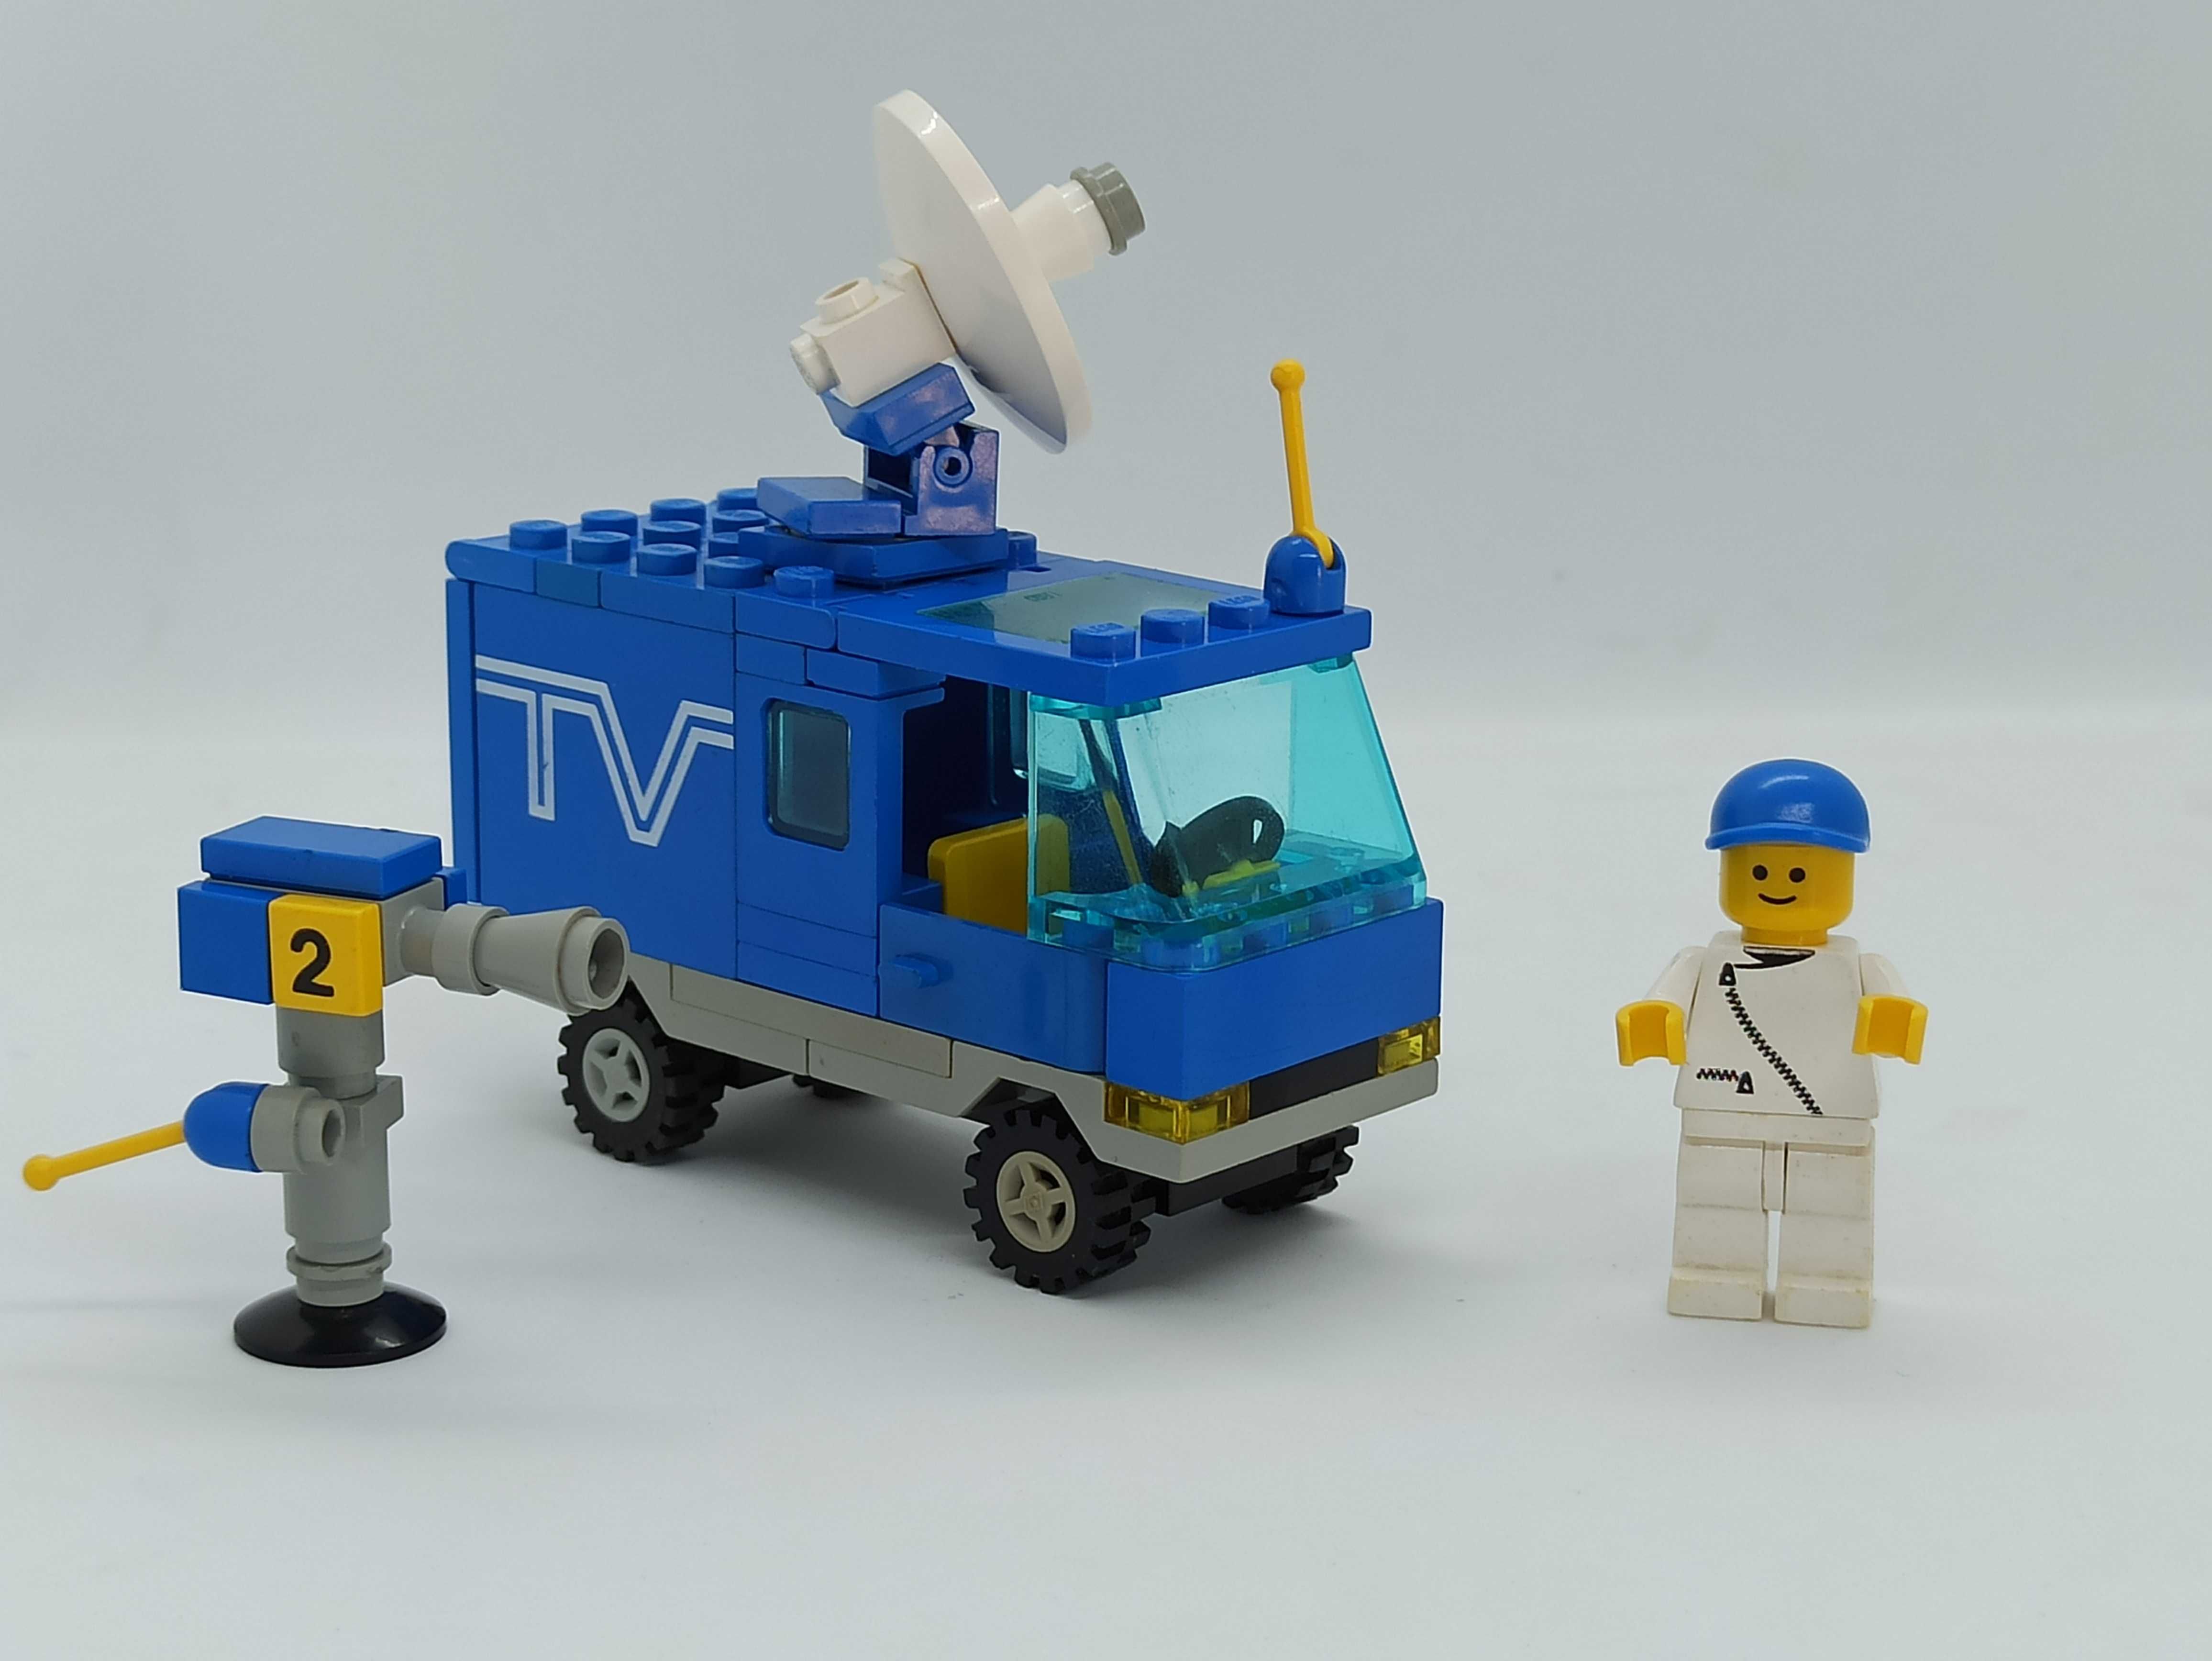 Lego 6661 TV Van / Mobile TV Studio City Town